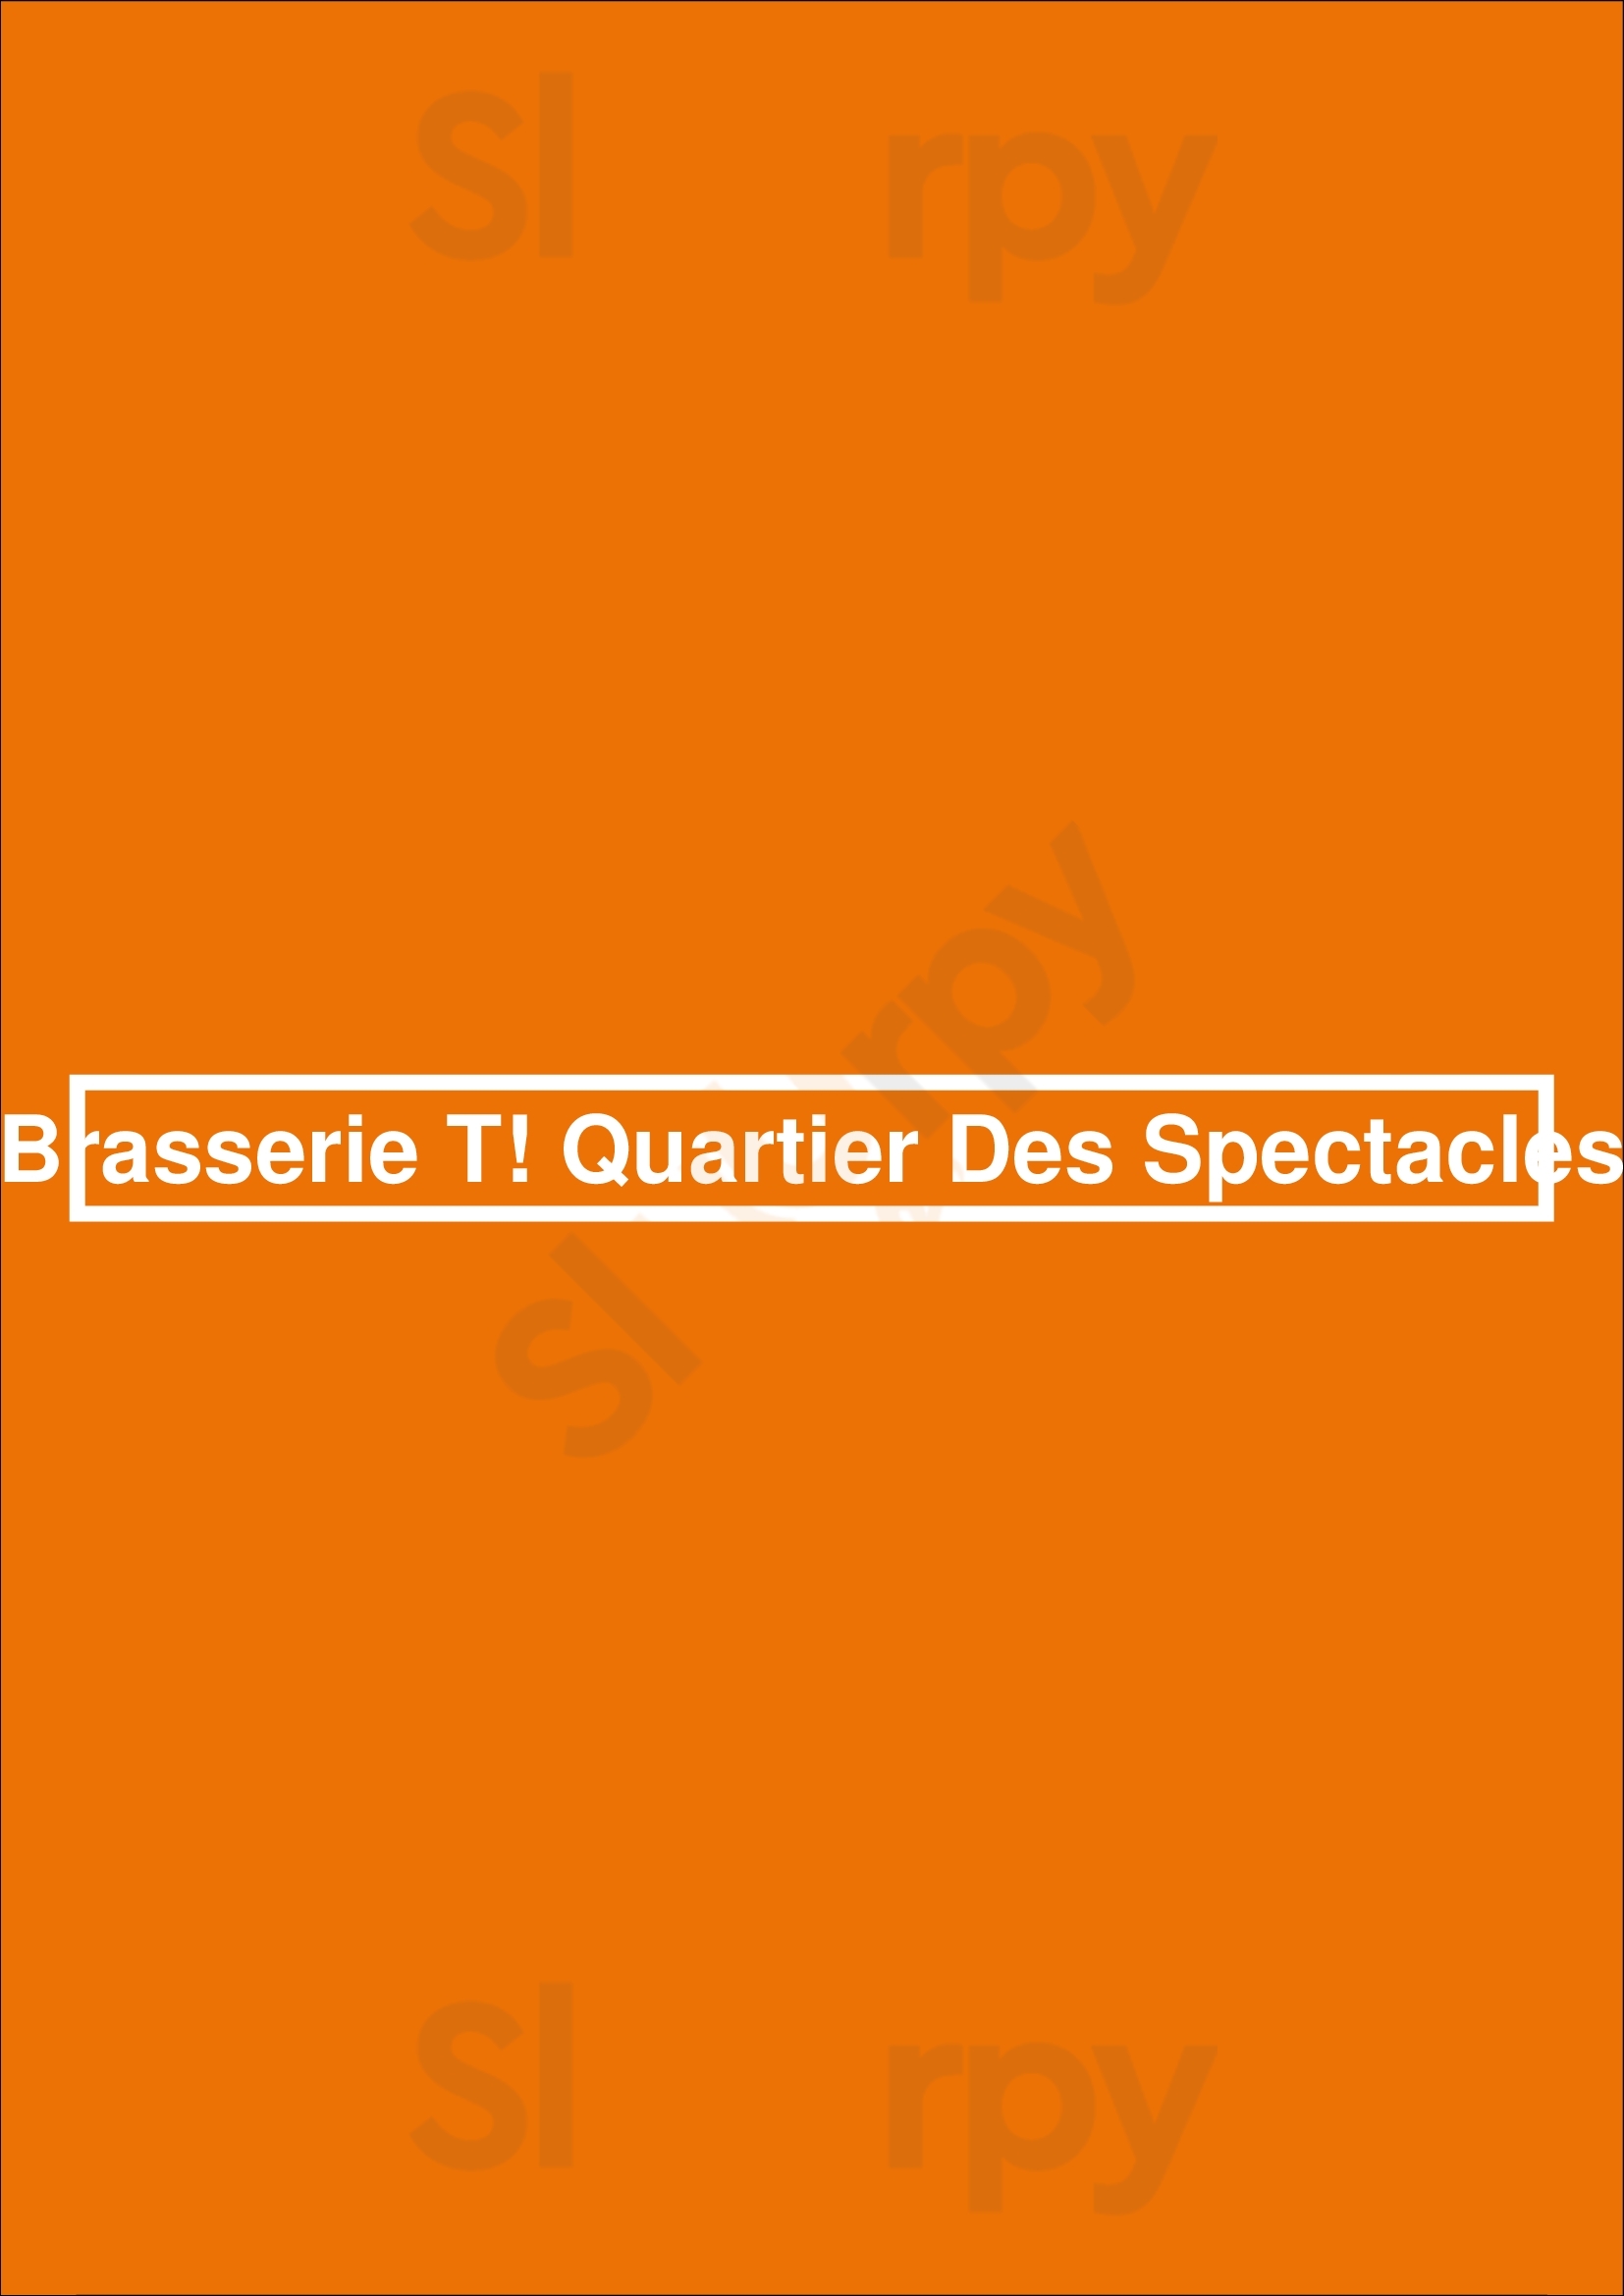 Brasserie T! Quartier Des Spectacles Montreal Menu - 1